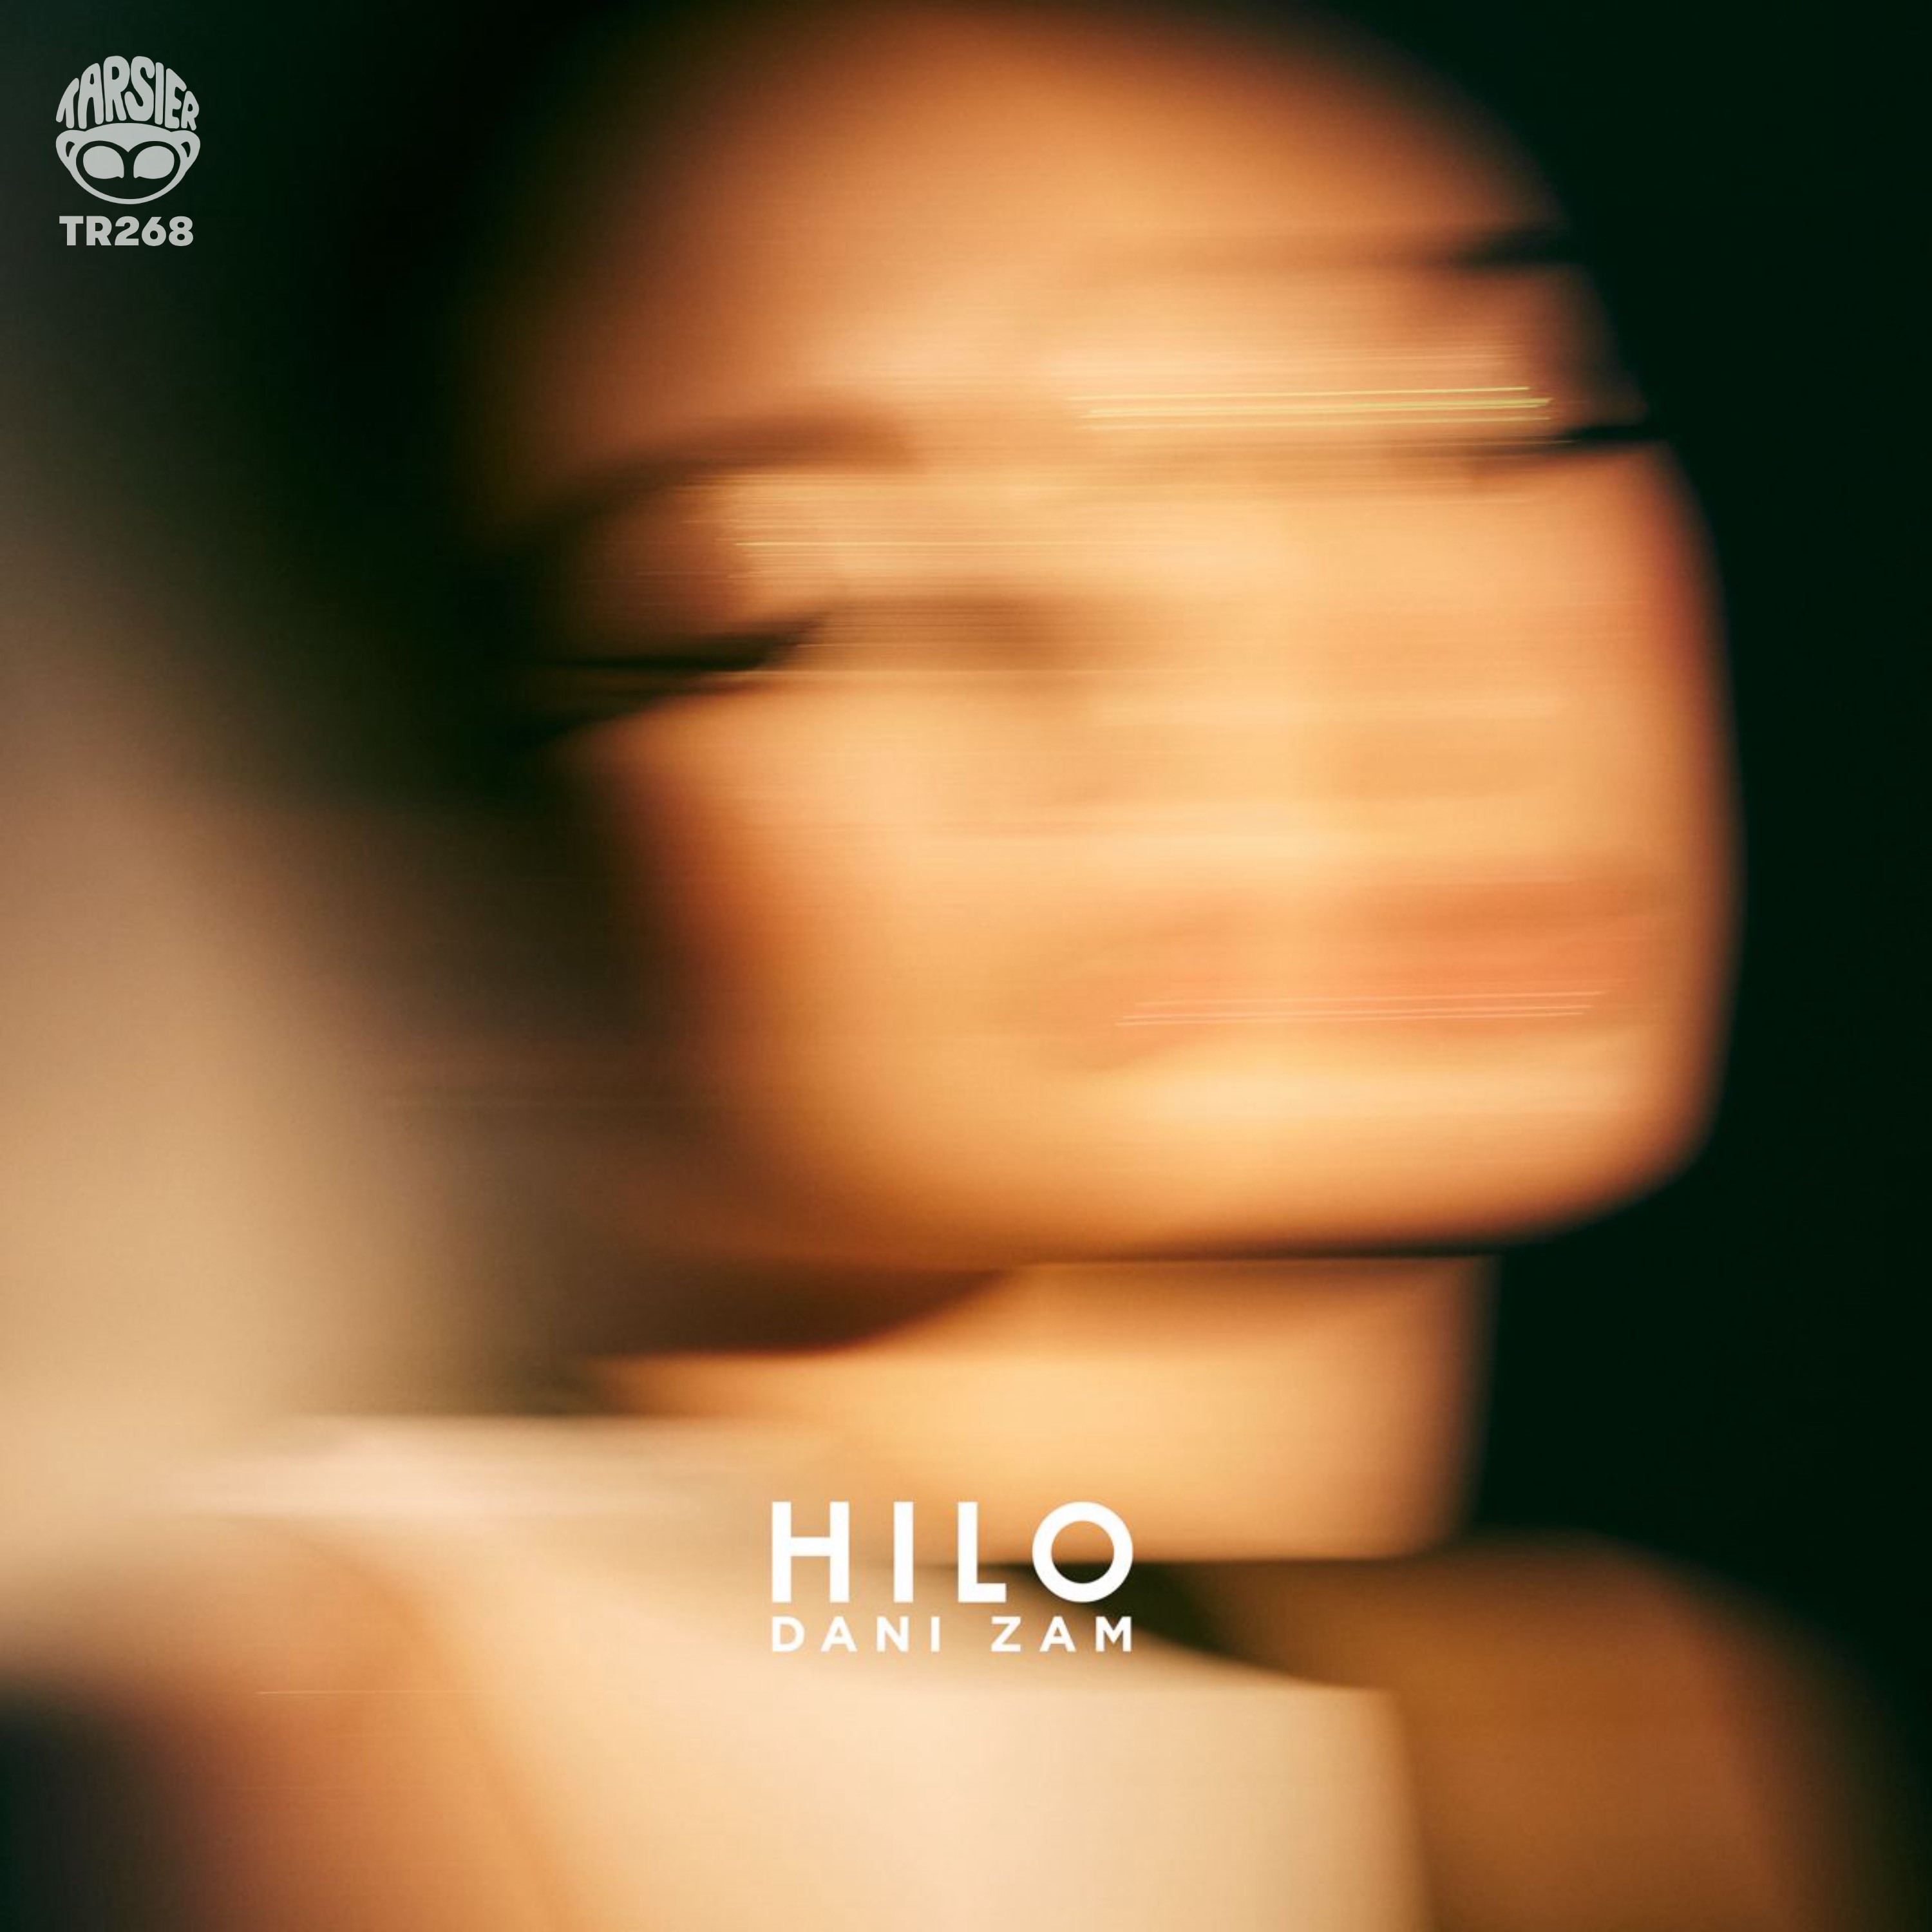 Hilo single cover _ Dani Zam